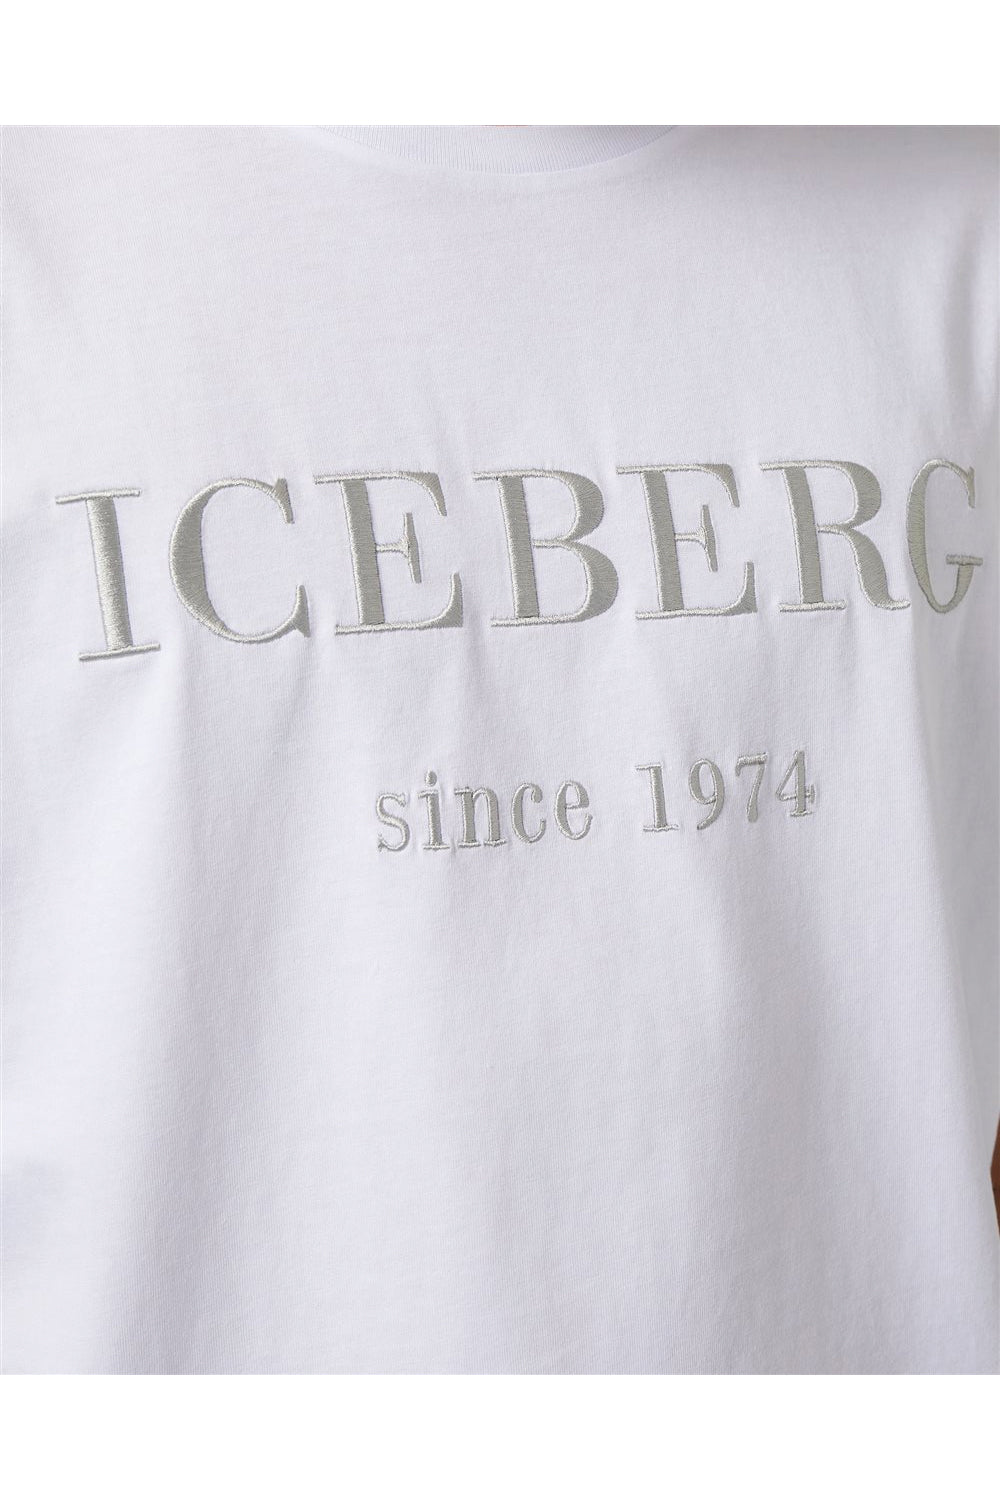 ICEBERG T-shirt girocollo con logo